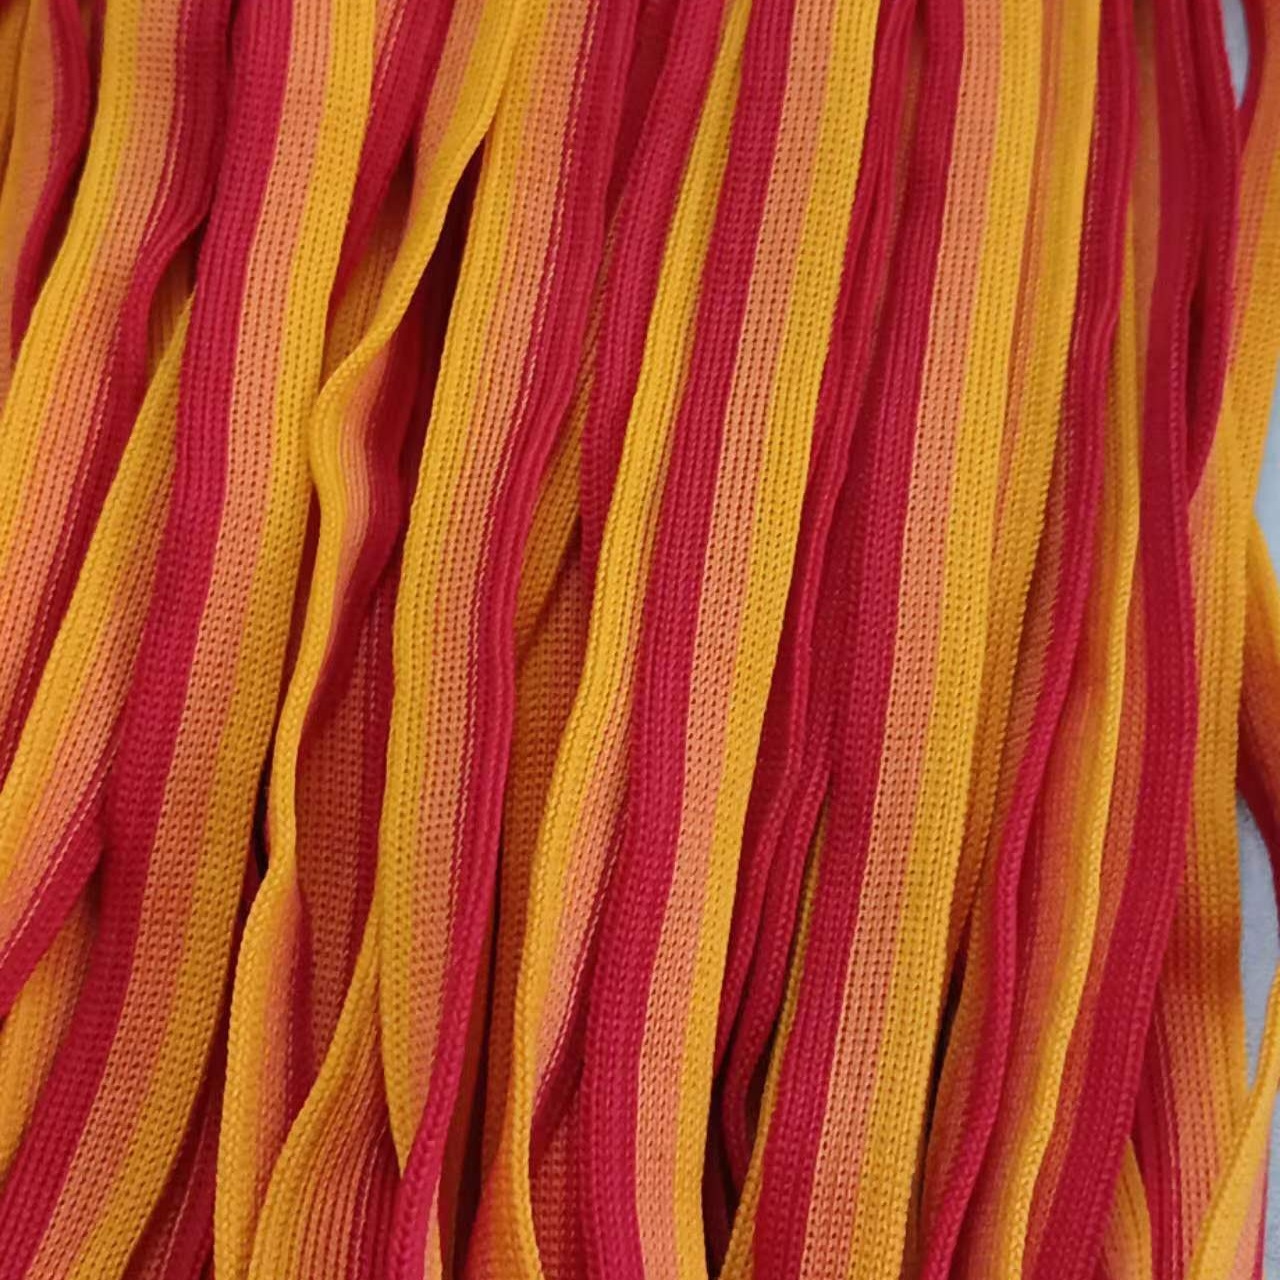 三涤纶间色针织带  涤纶织带  服装 工艺品   辅料  批发定制  涤纶针织带图片